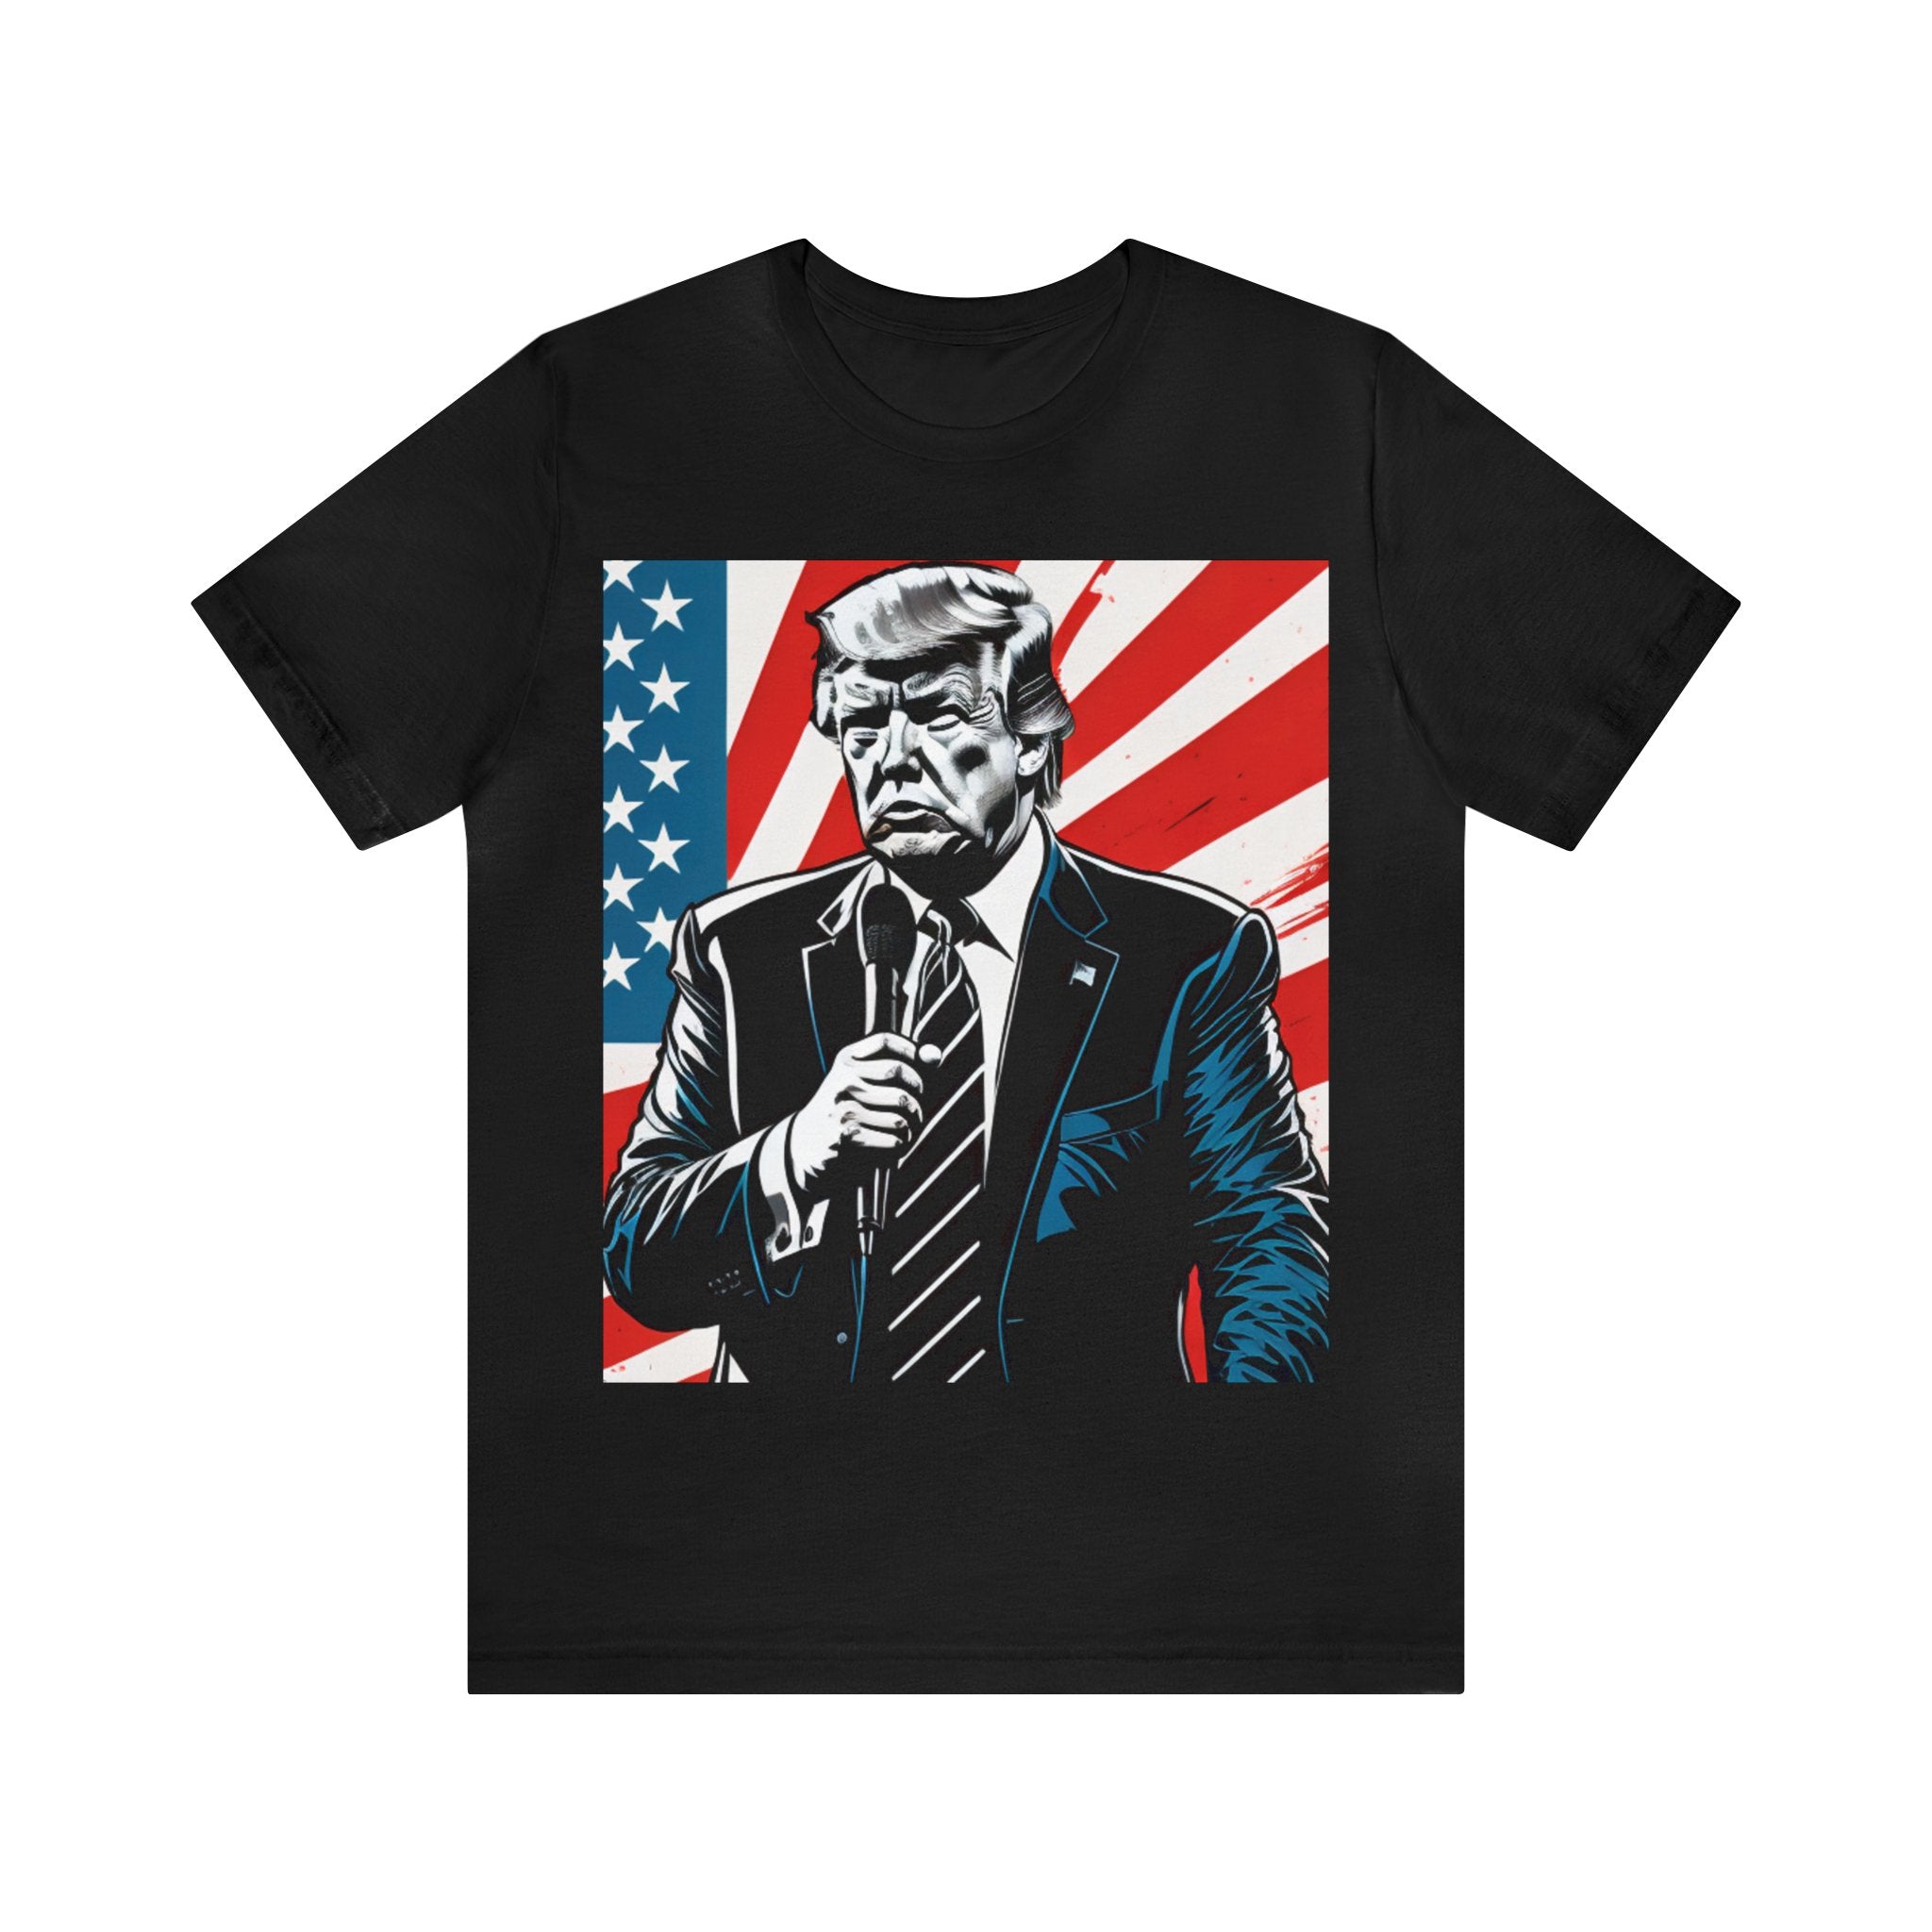 Donald Trump Shirt